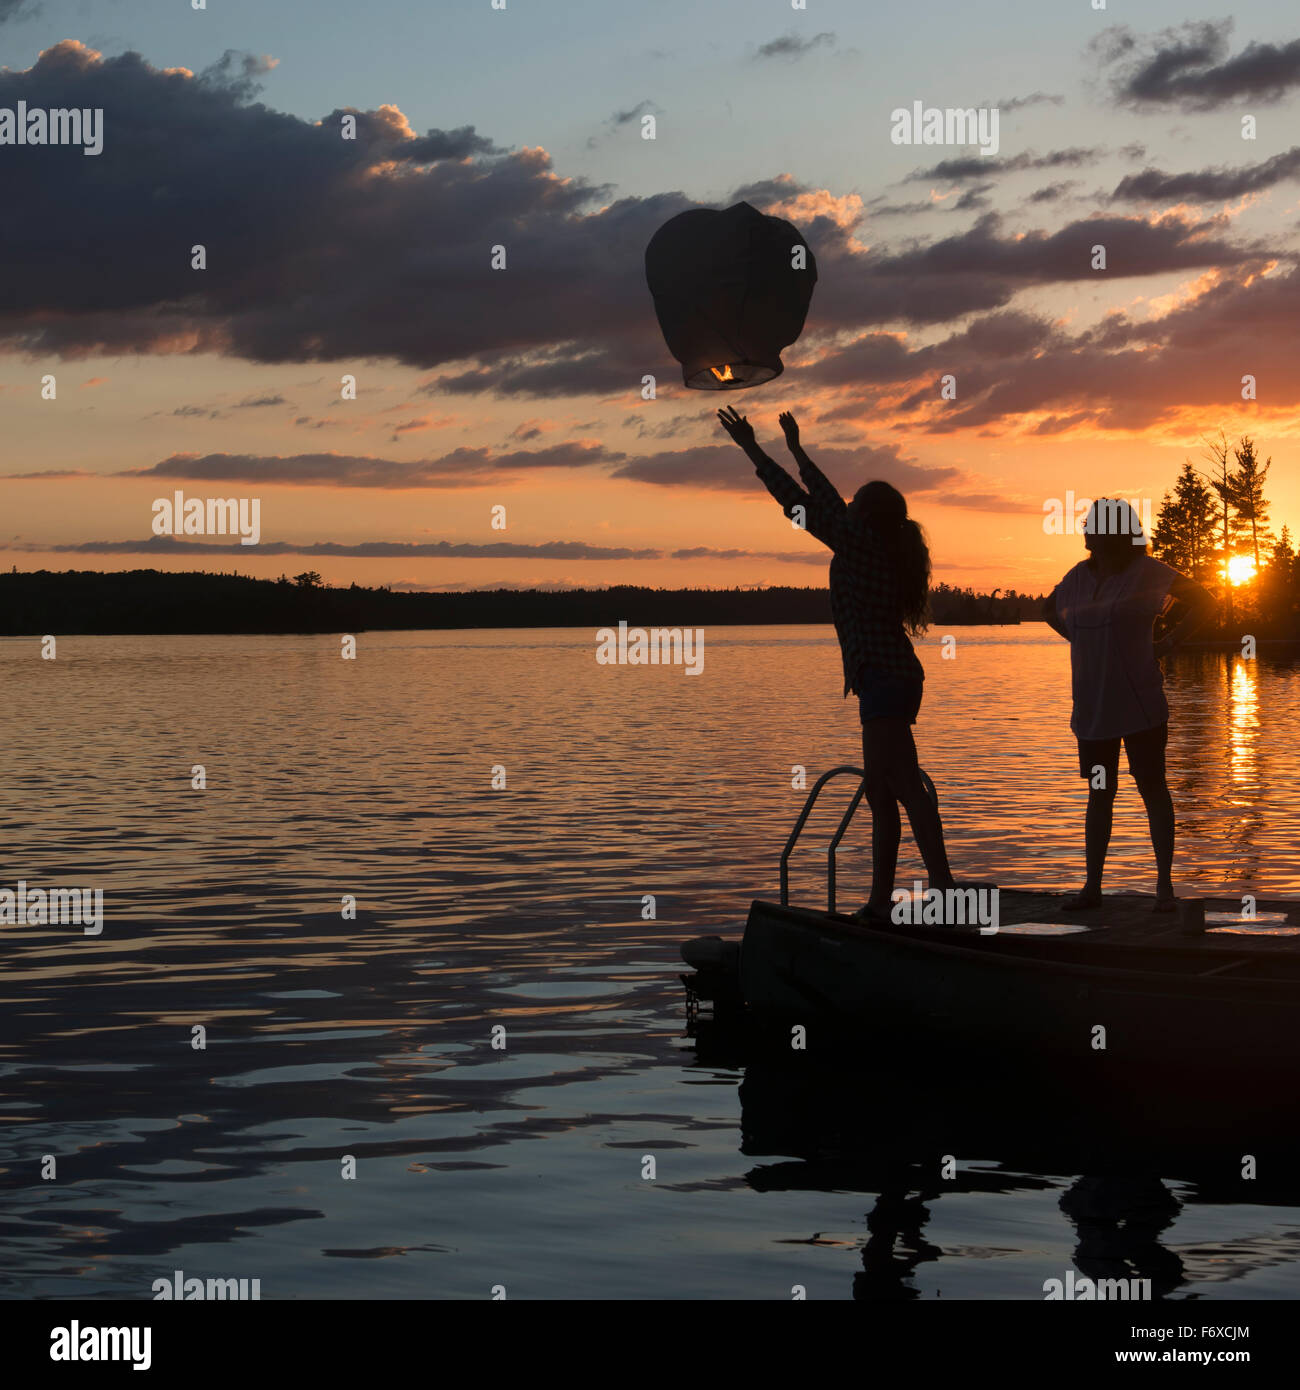 Silhouette di una ragazza adolescente rilasciando una lanterna accesa su un lago al tramonto; lago dei boschi, Ontario, Canada Foto Stock